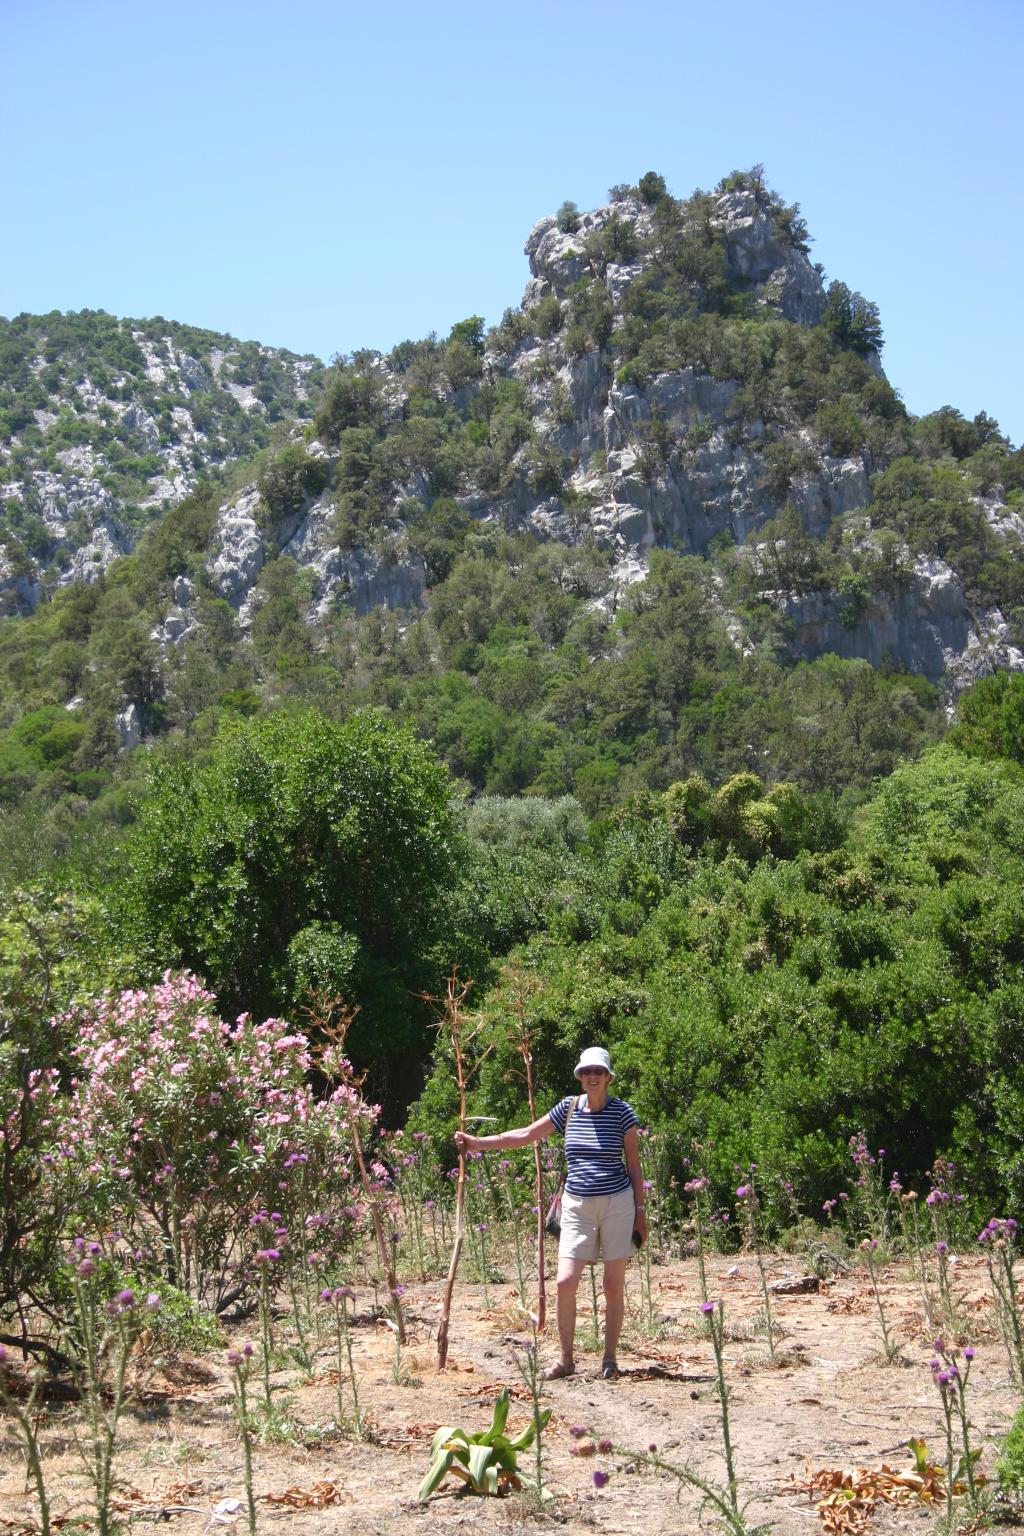 [Wednesday 8th June, approach to Cala Luna, Sardinia.